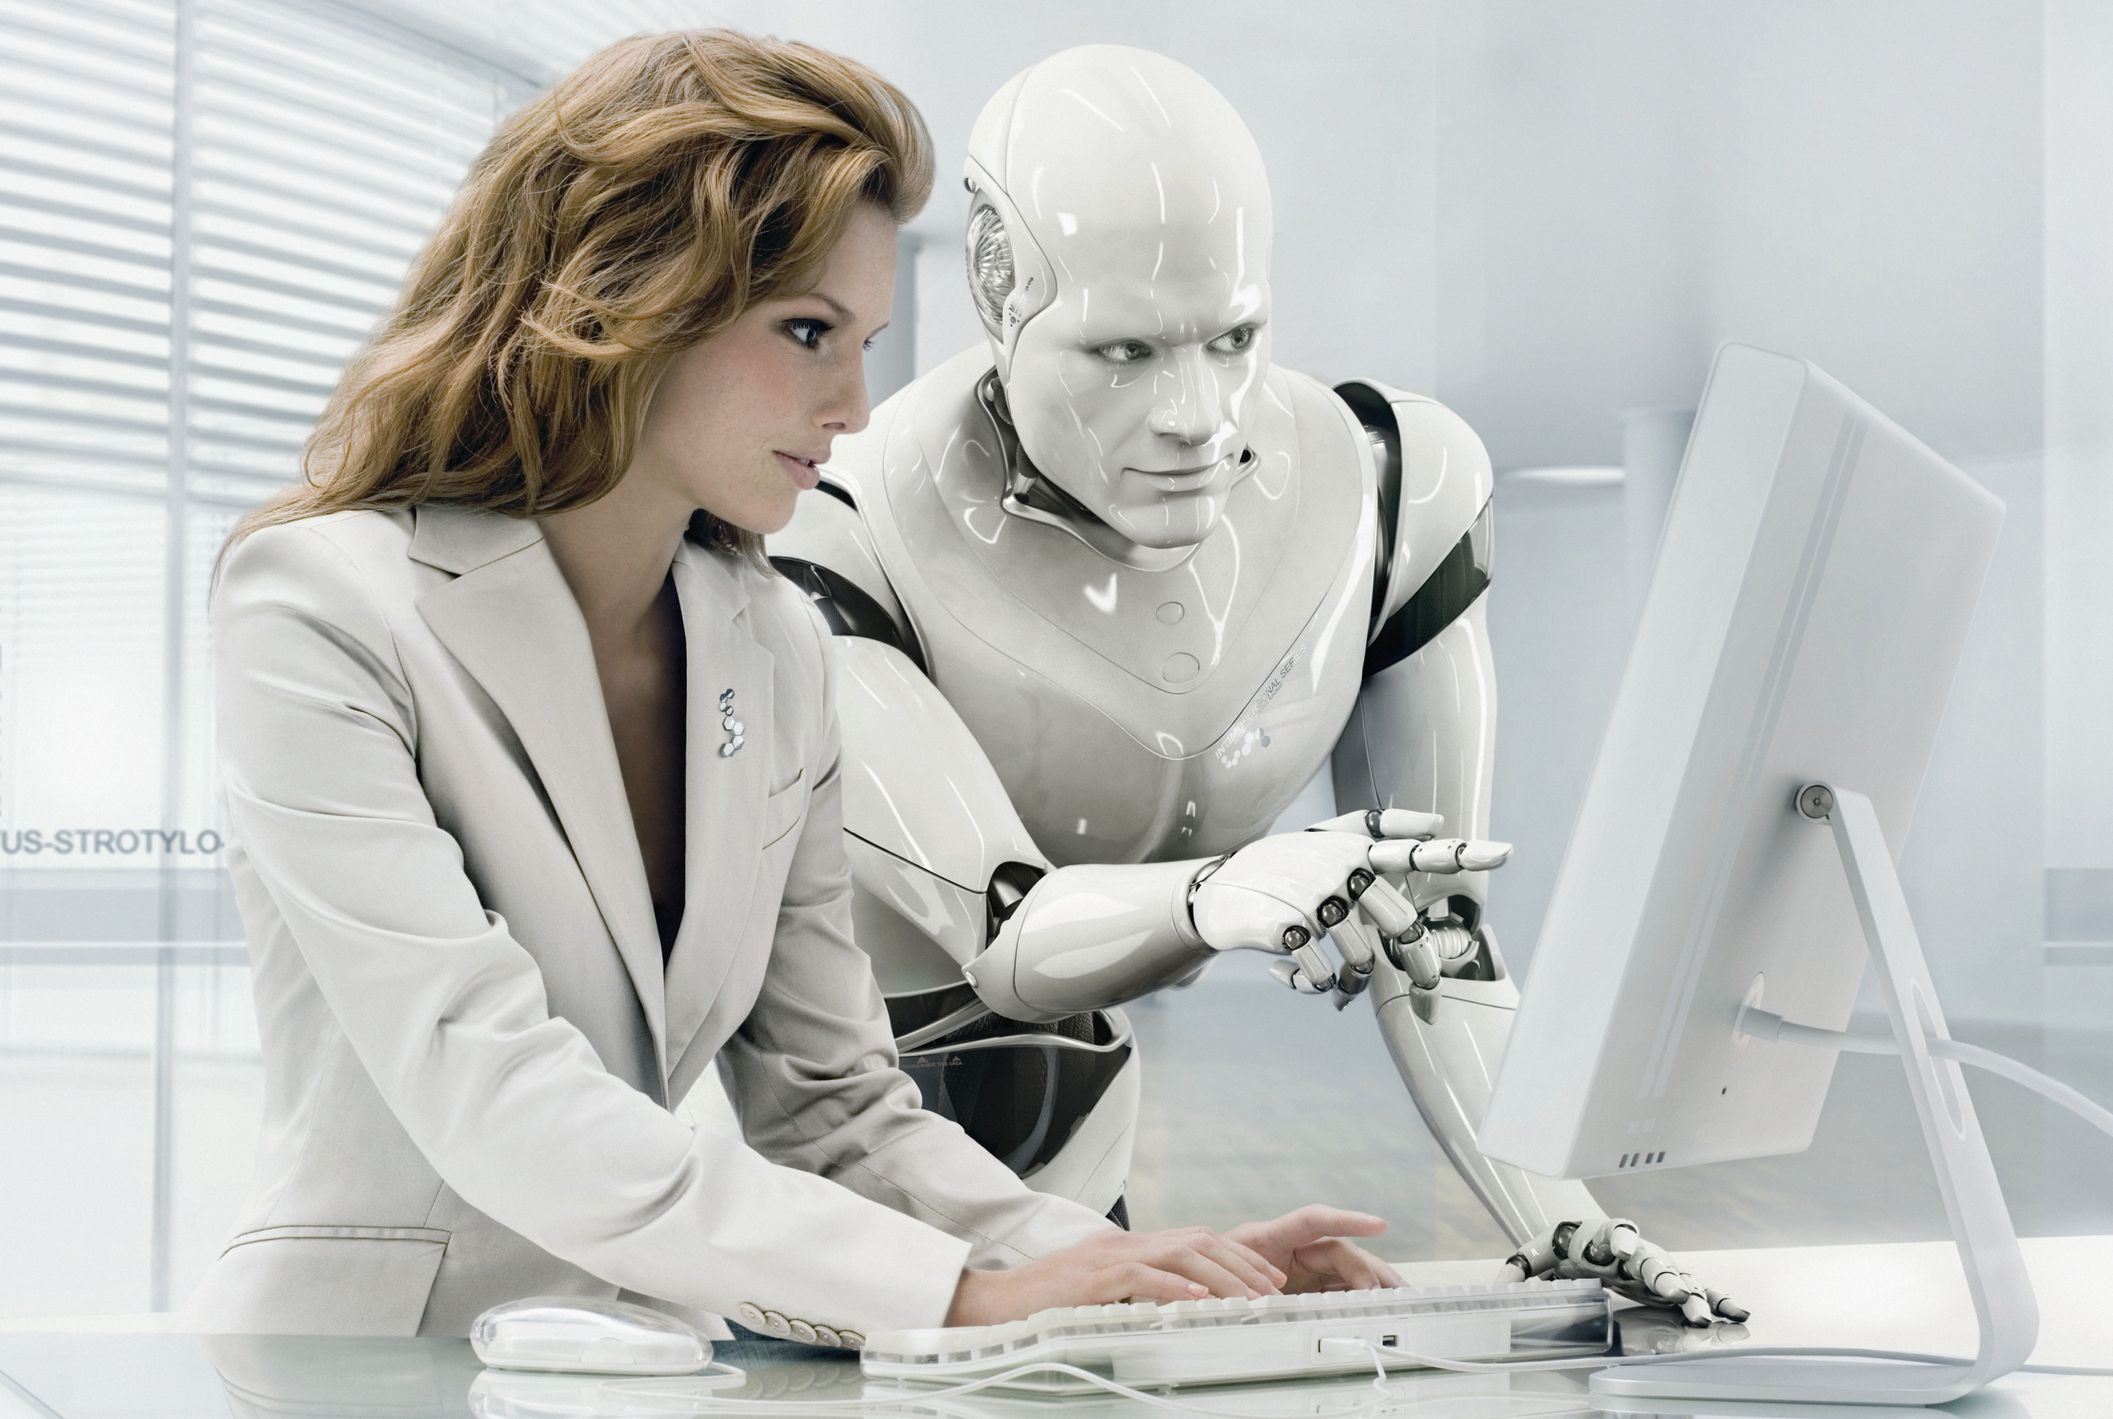 Cómo afectará la llegada de robots al mercado laboral?